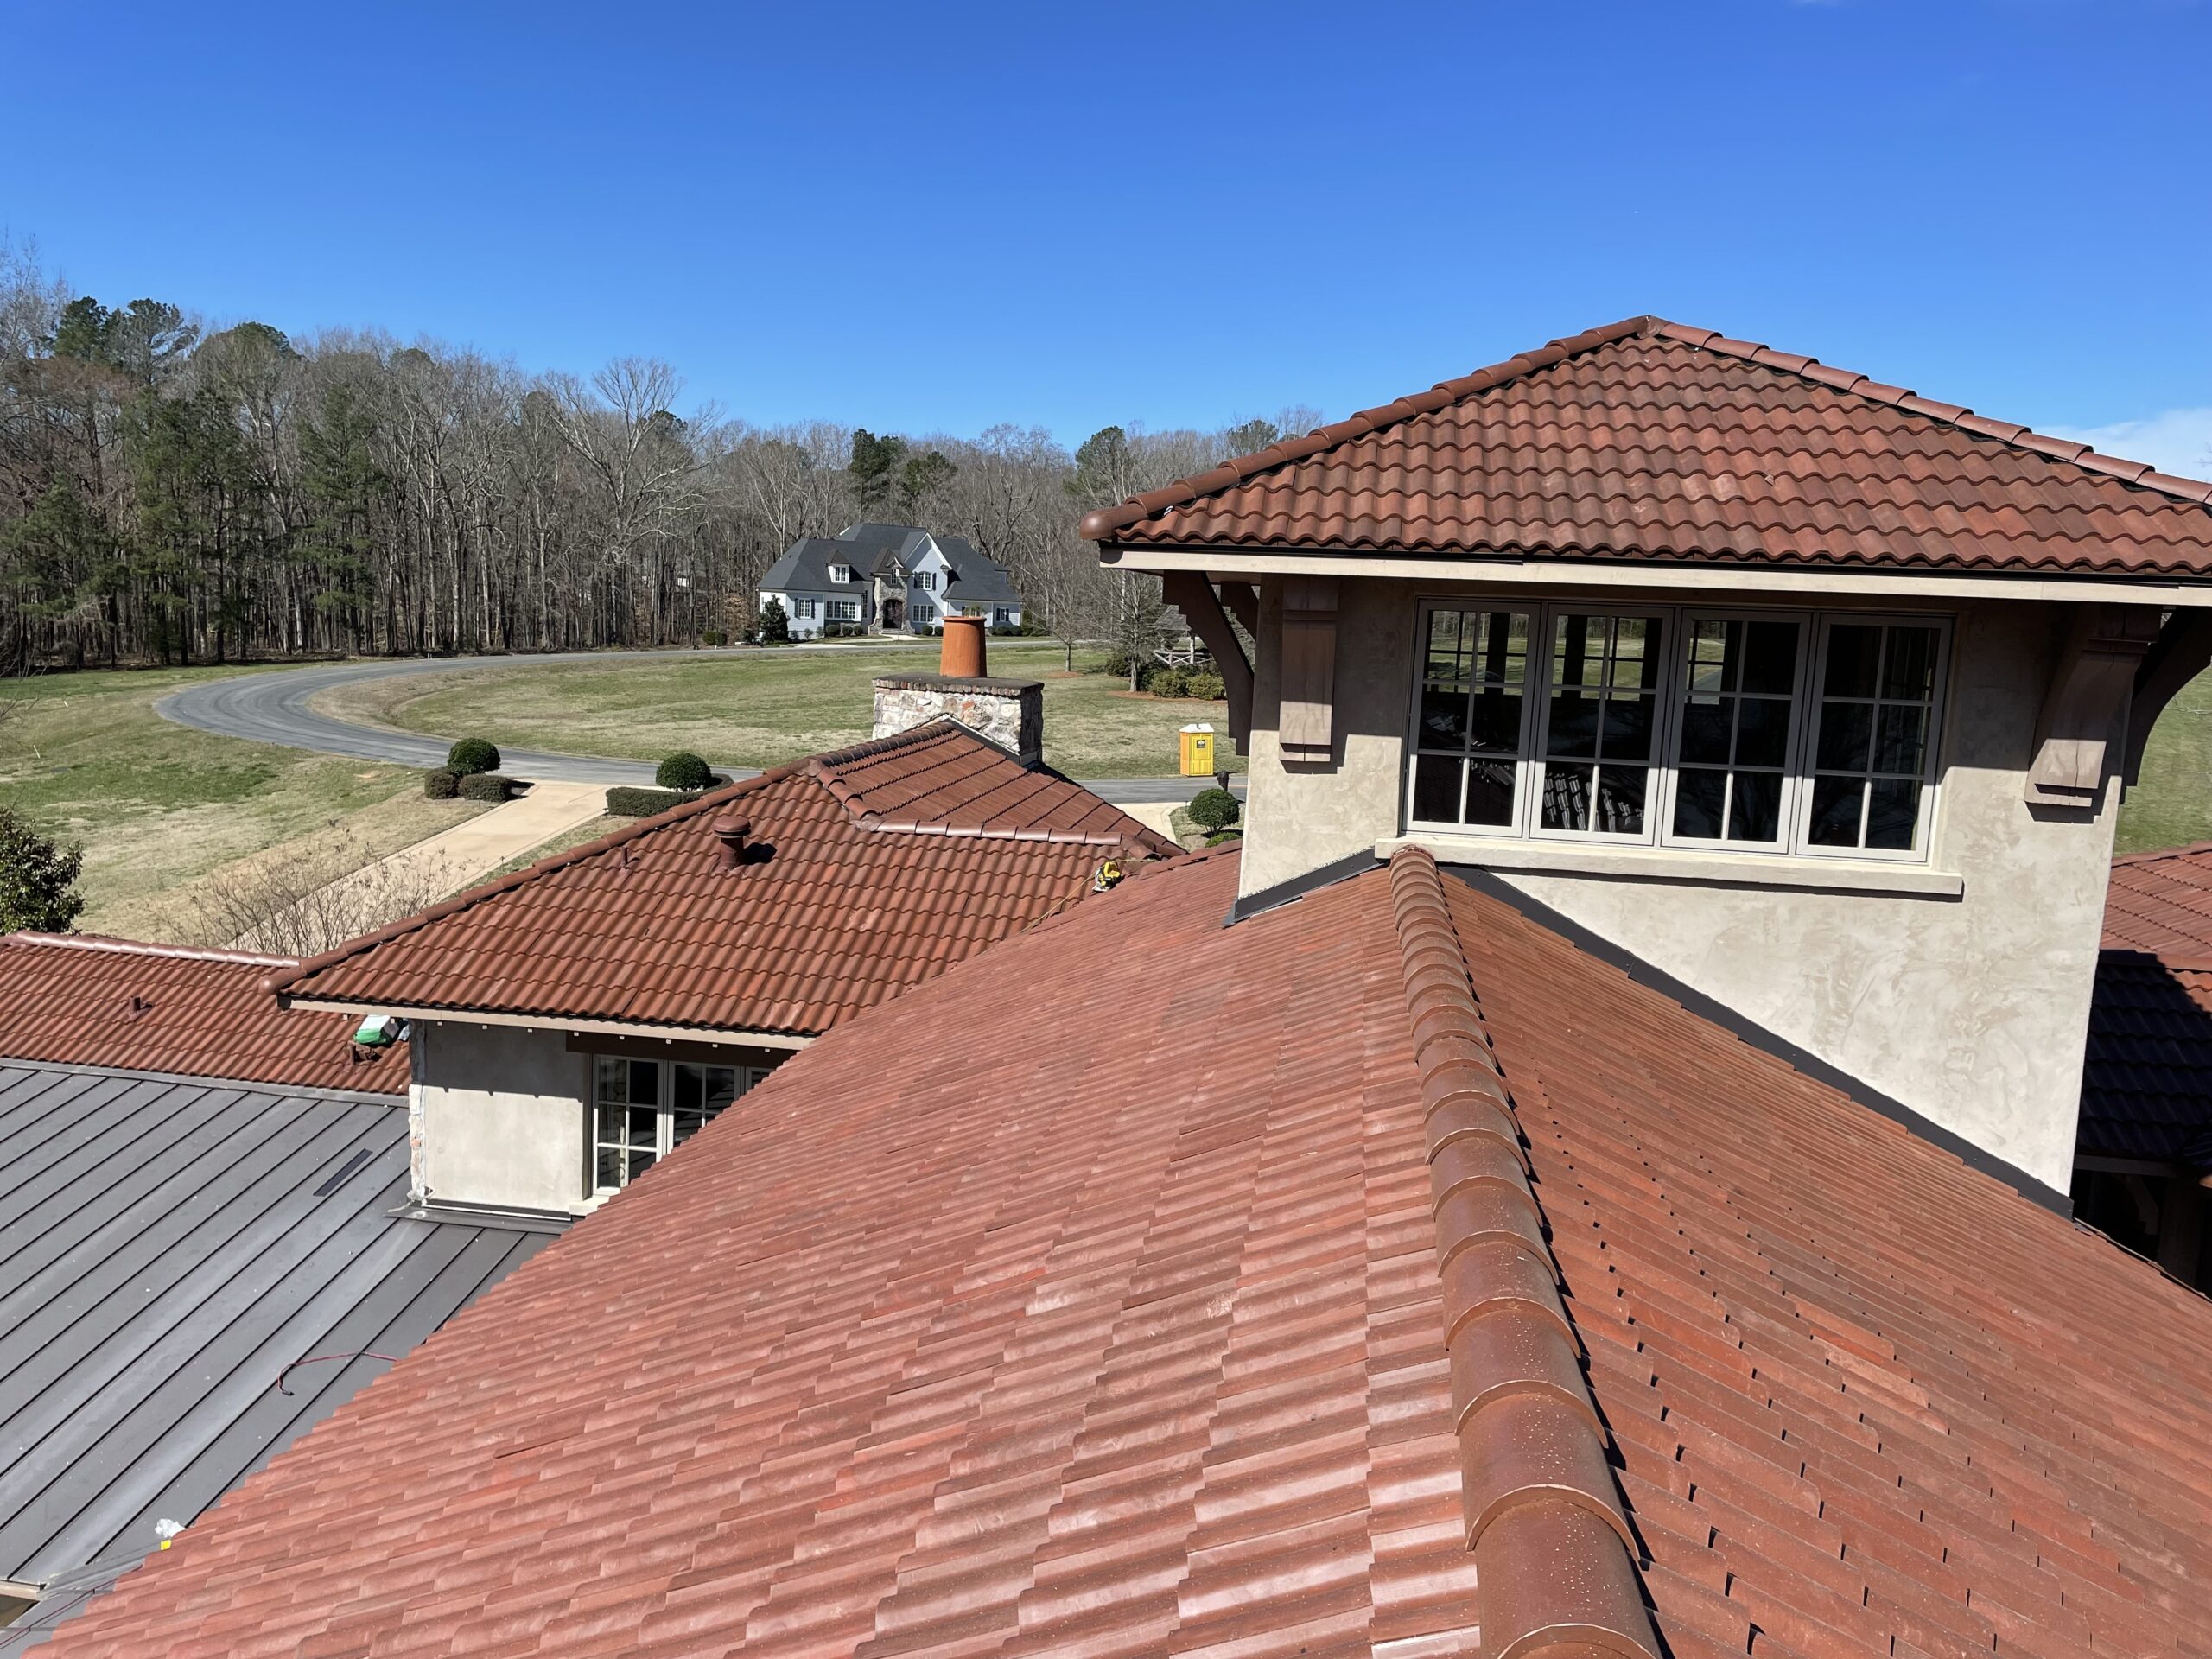 Superior roofing workmanship in Garner, NC